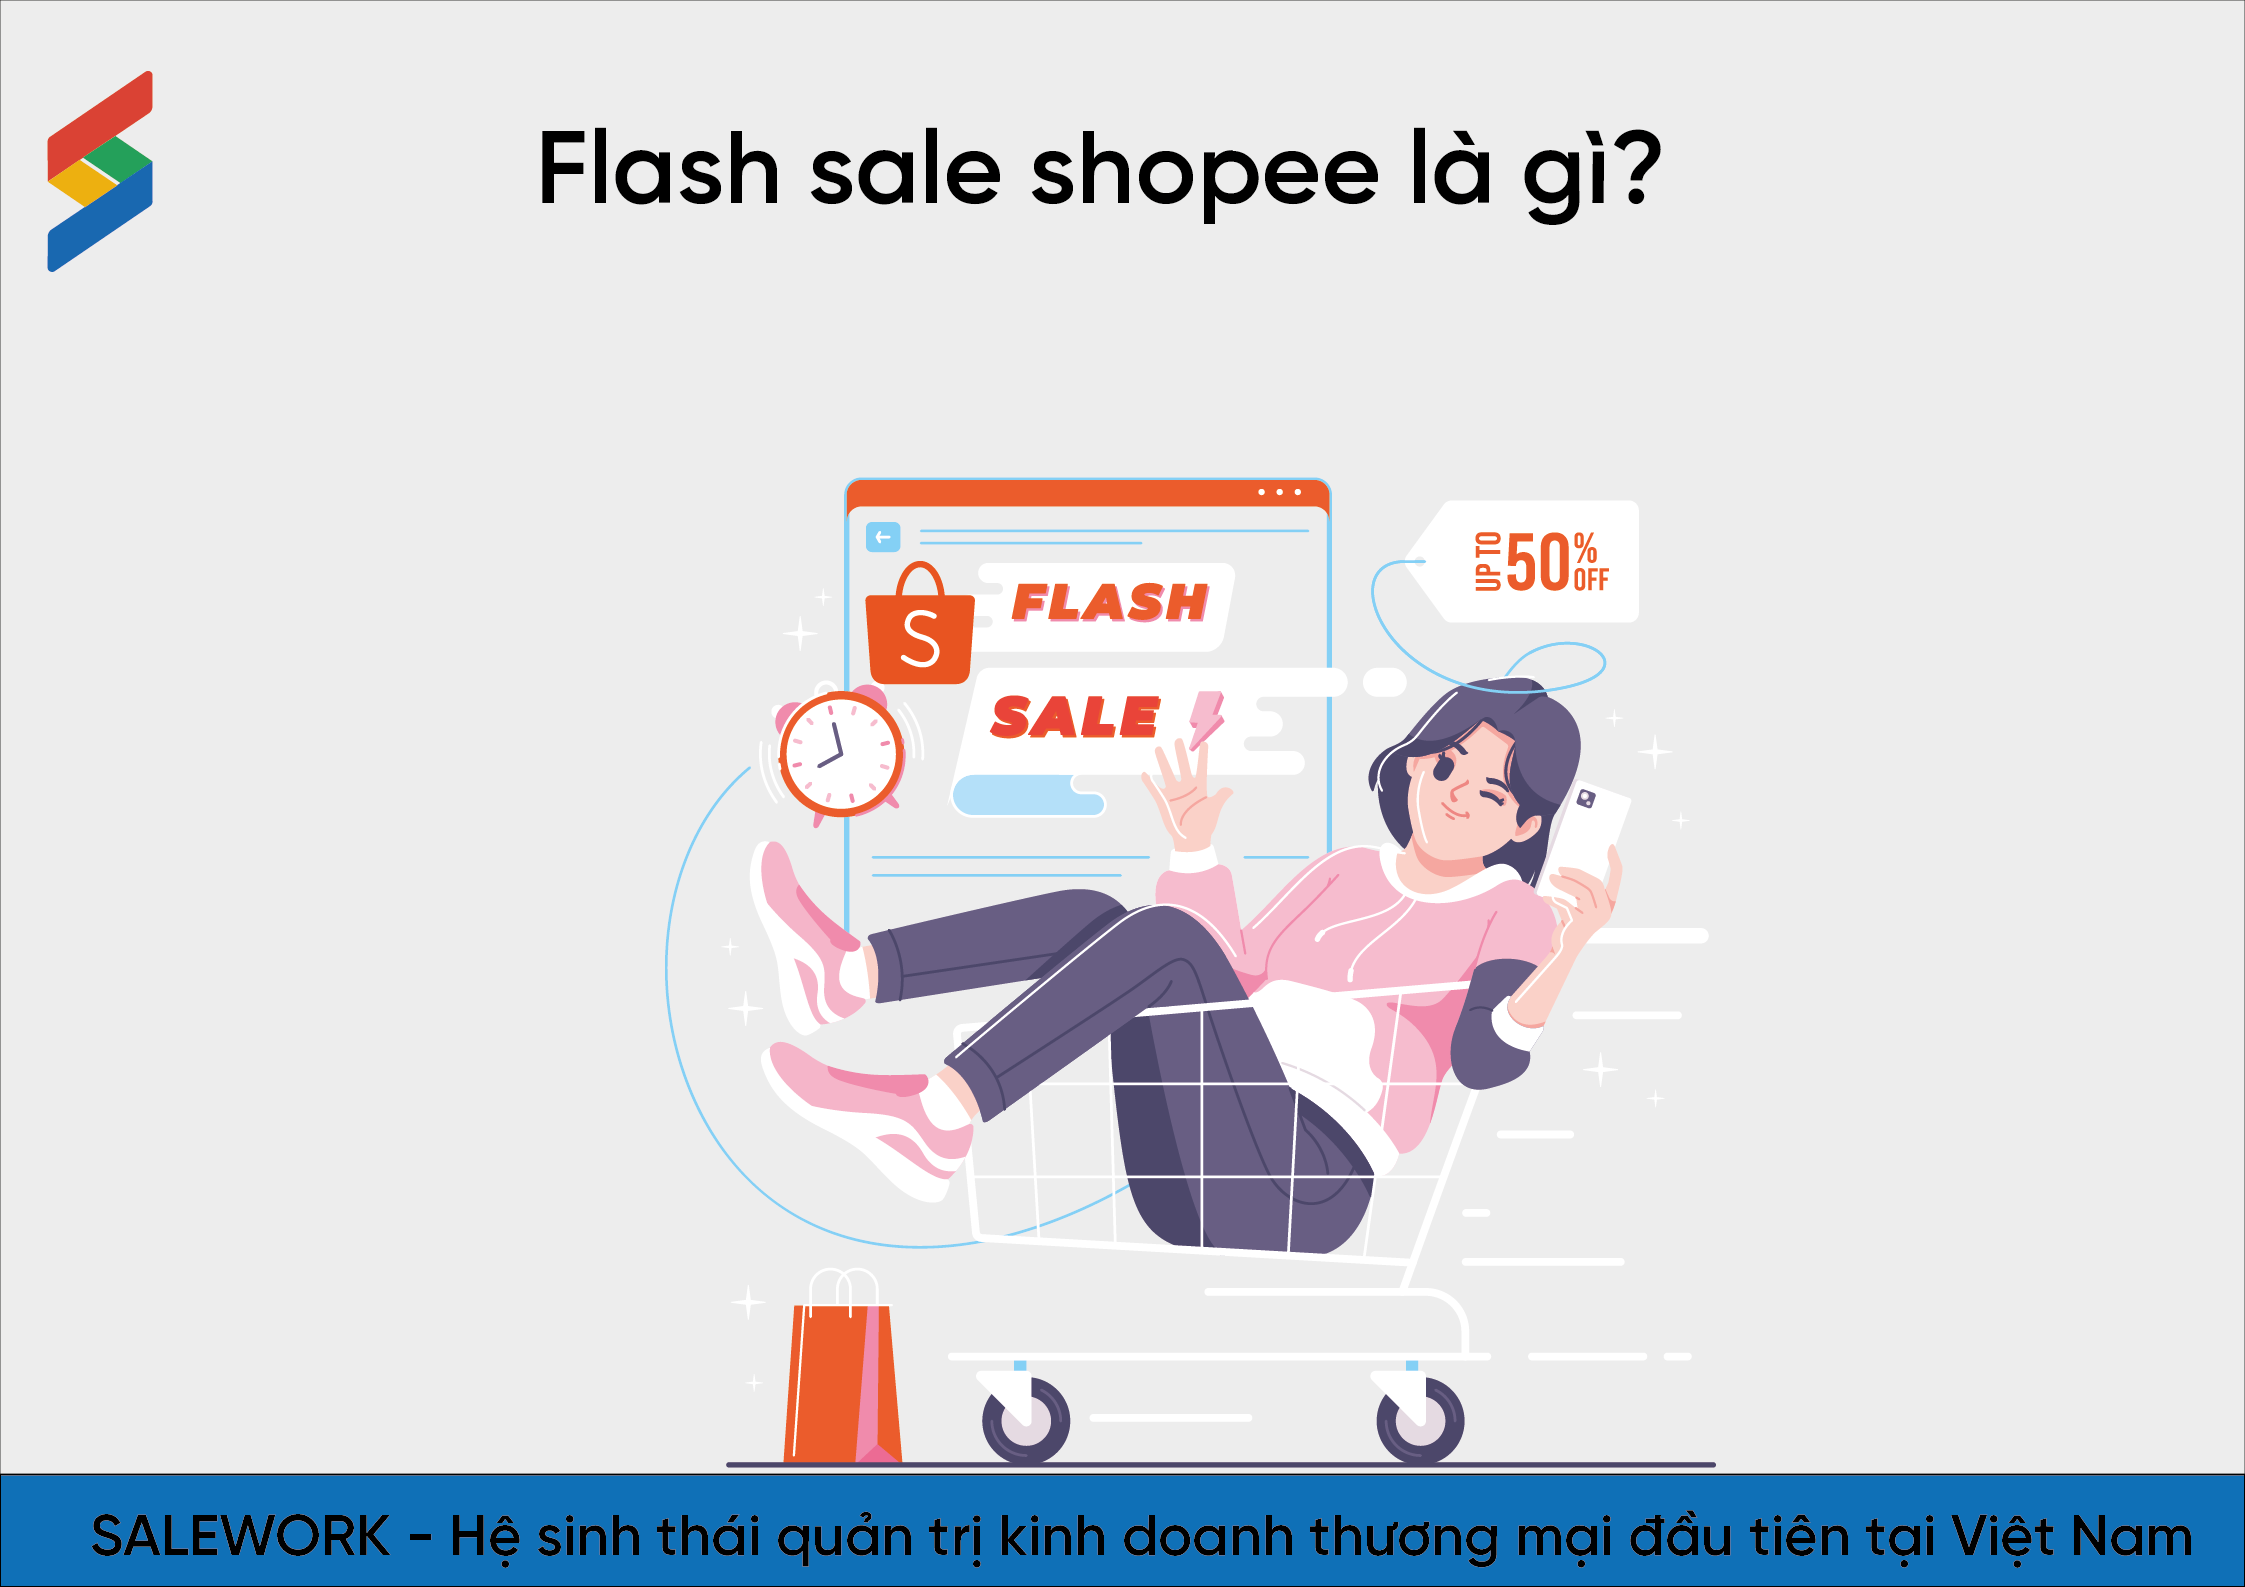 Flash sale shopee là gì? Kinh nghiệm sử dụng flash sale hiệu quả - 66